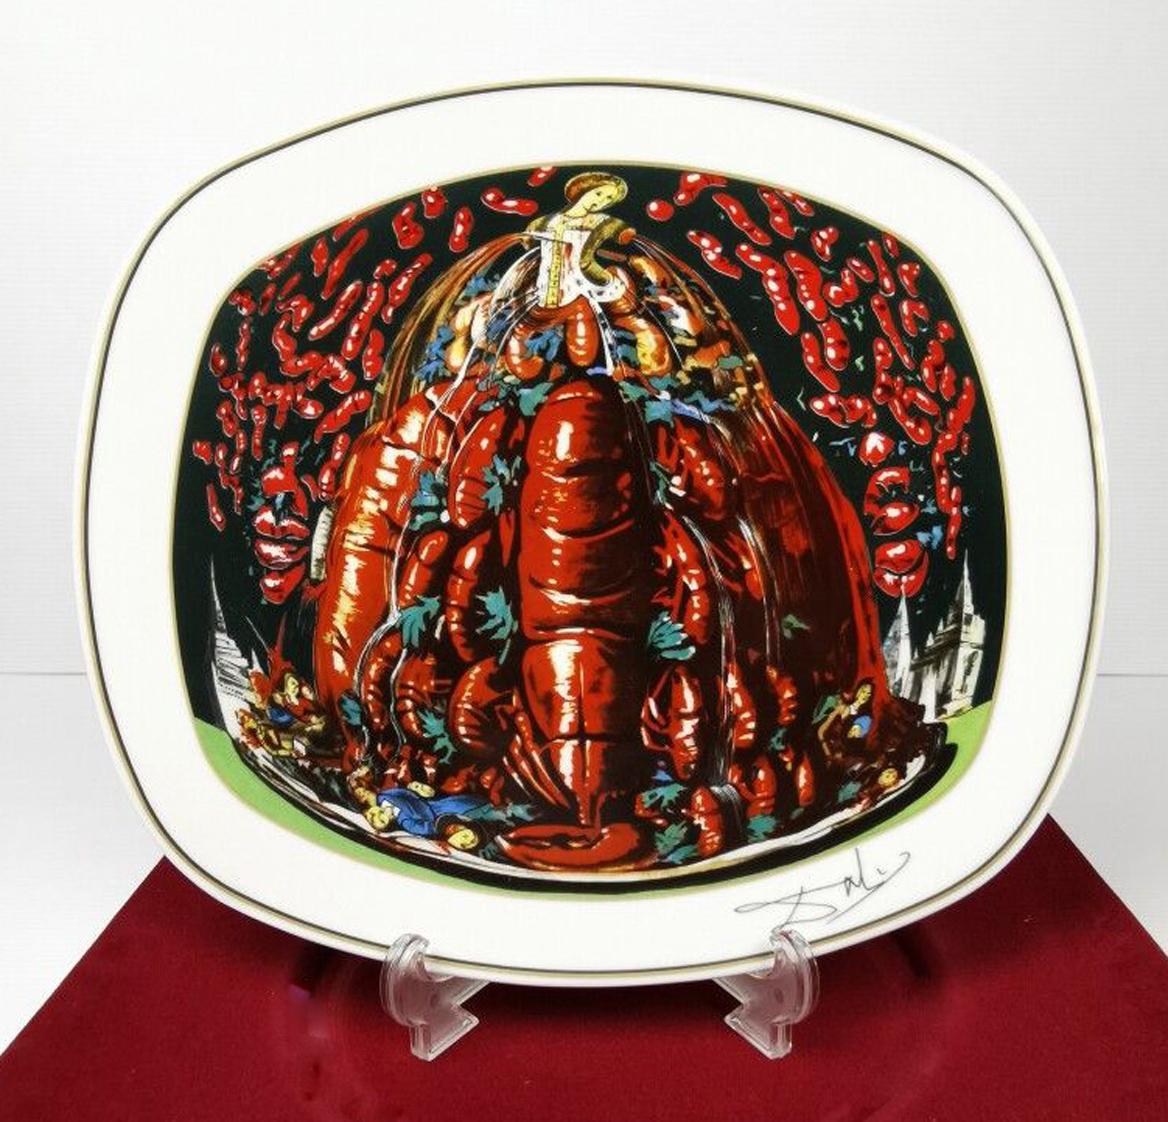 Les diners de Gala: Les cannibalismes de l'automne - Surrealist Sculpture by Salvador Dalí